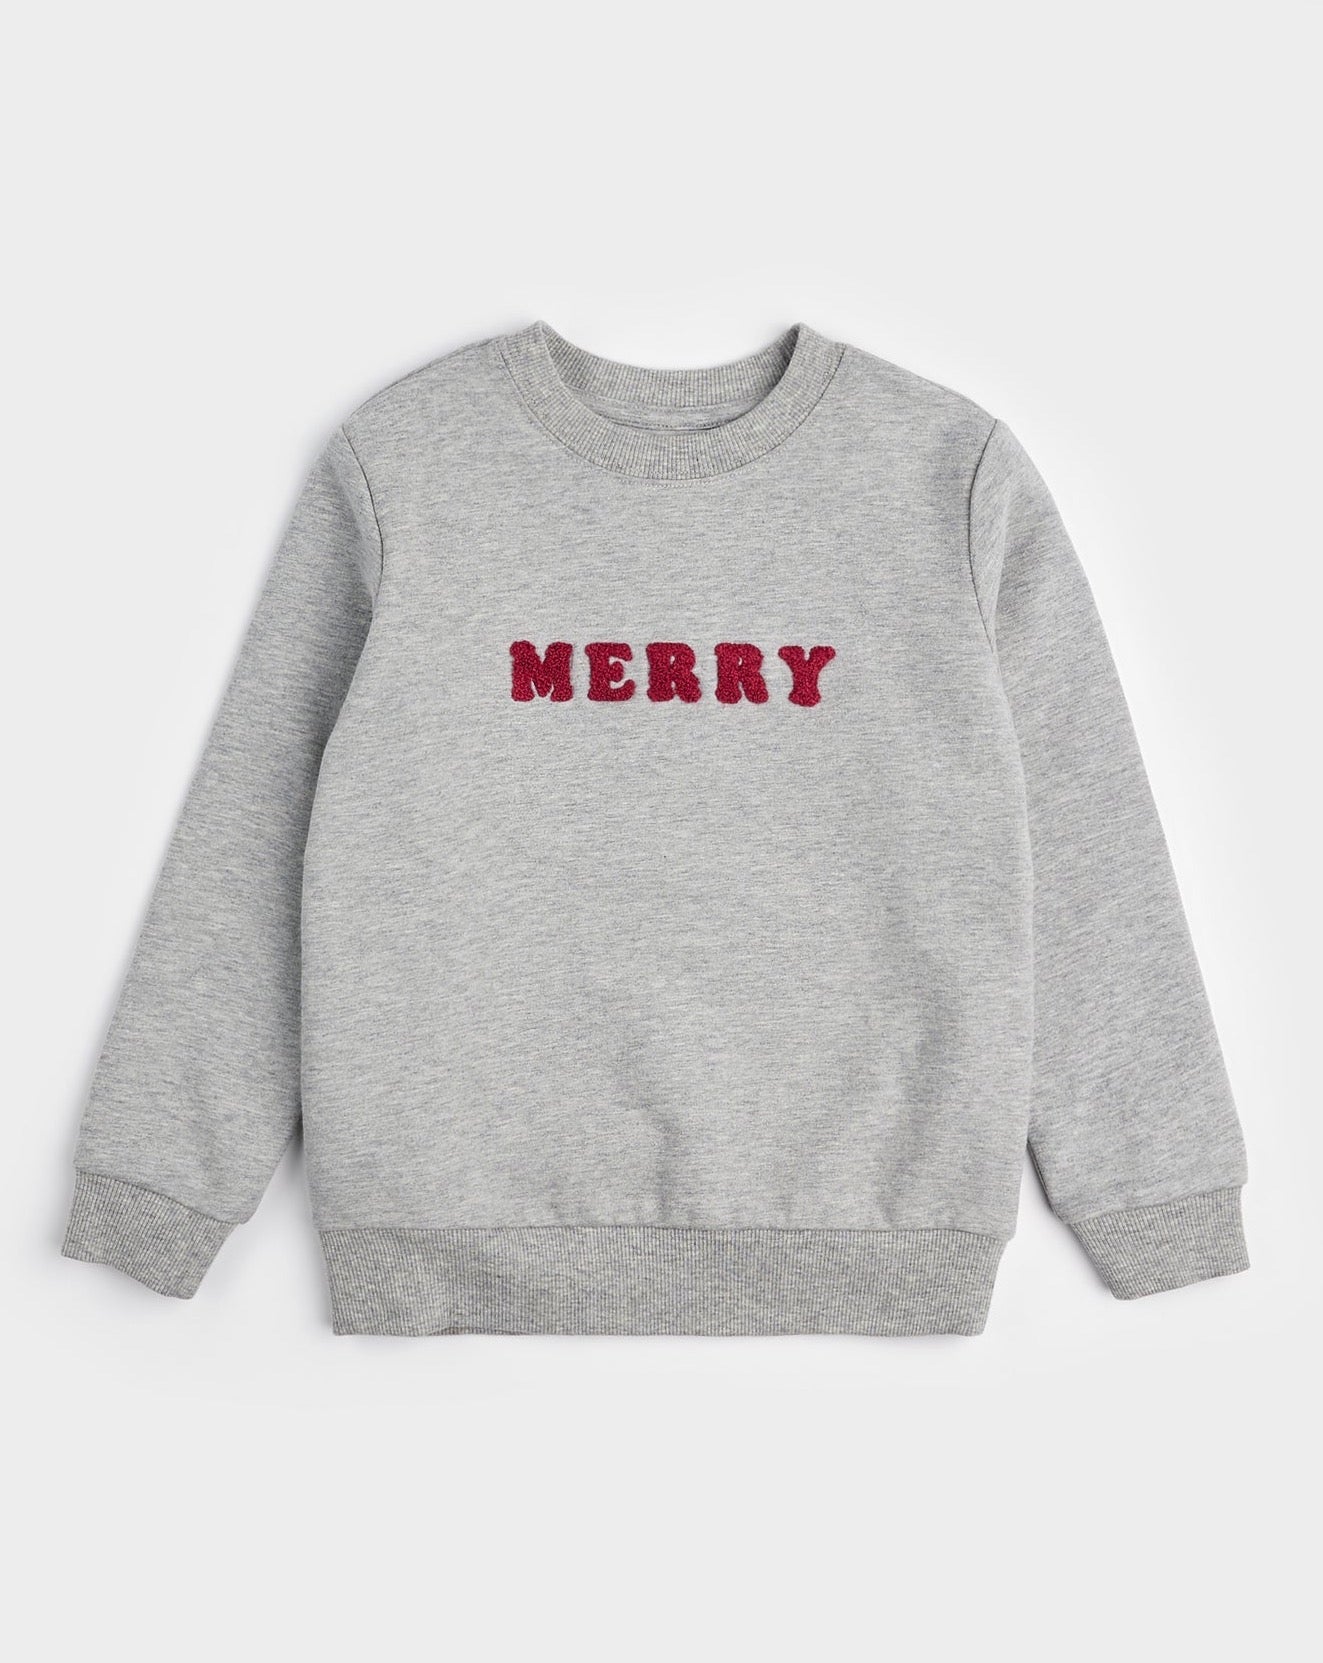 Merry in Heather Grey Fleece Sweatshirt